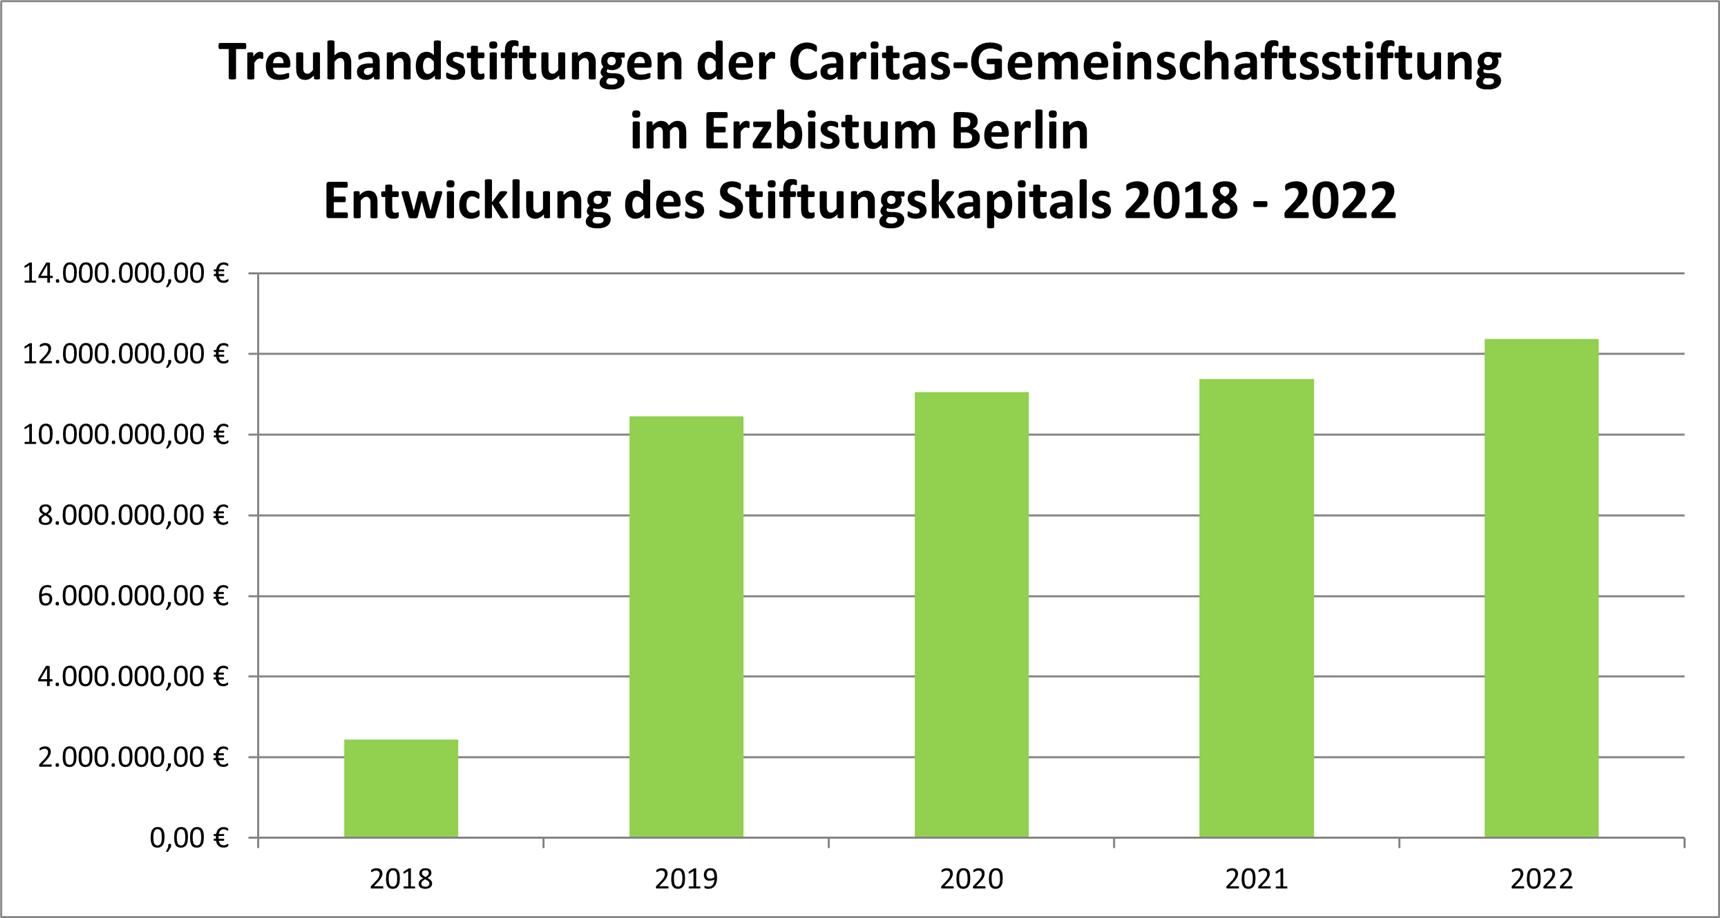 Treuhandstiftungen der Caritas-Gemeinschaftsstiftung  im Erzbistum Berlin Entwicklung des Stiftungskapitals 2018 - 2022